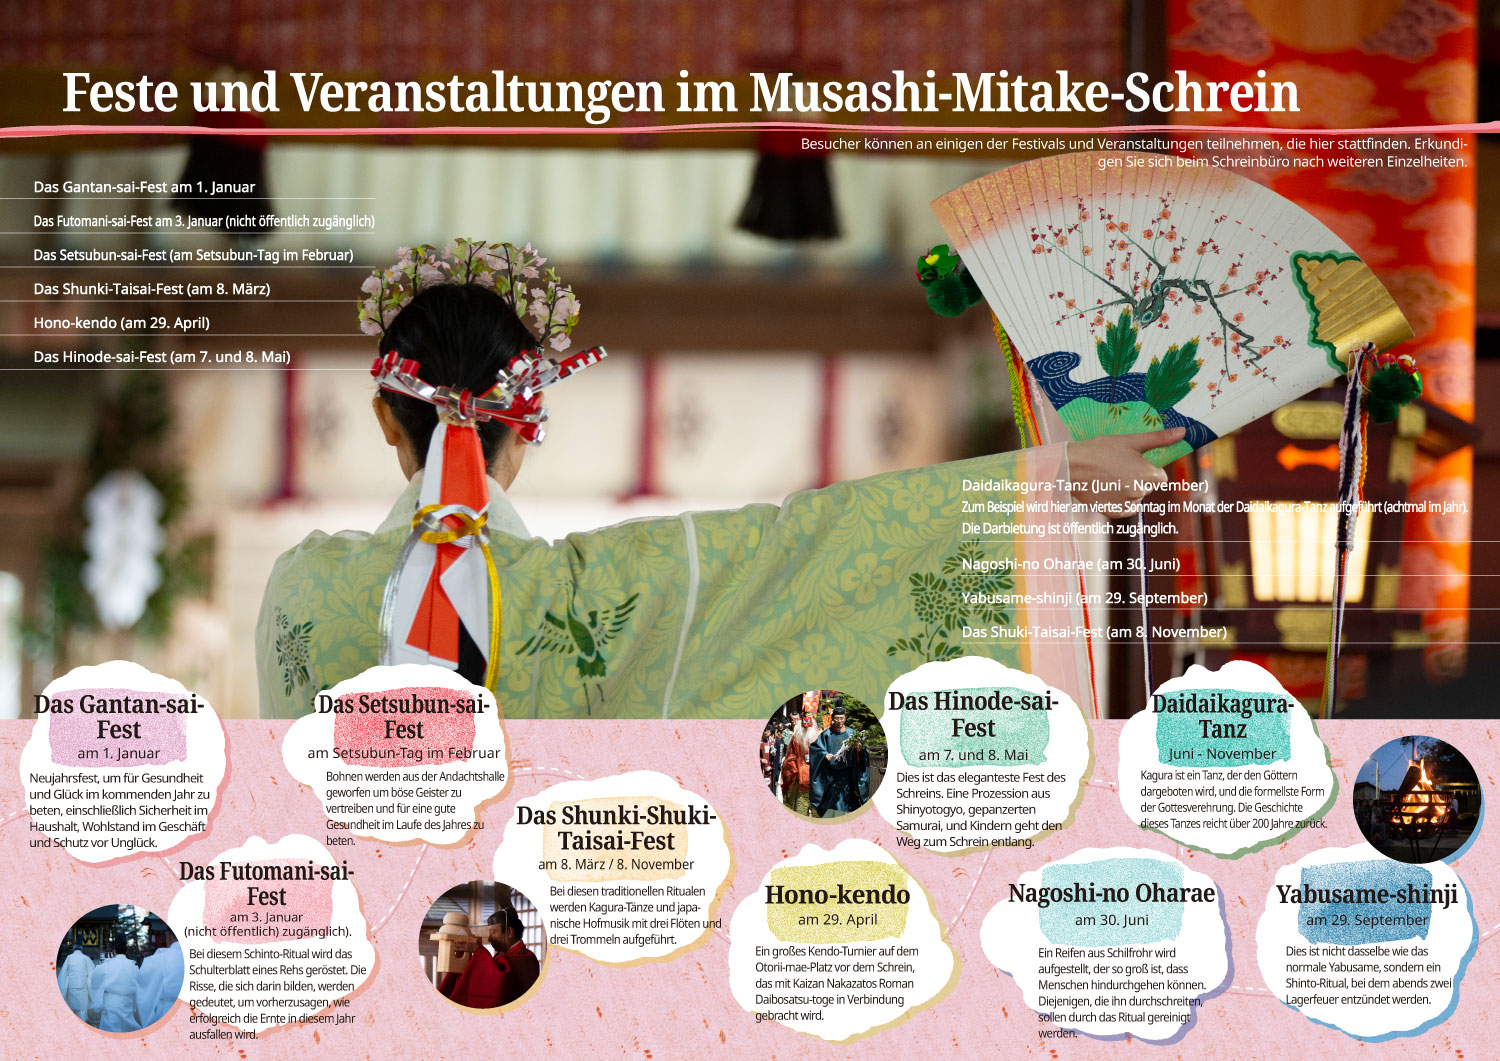 Feste und Veranstaltungen im Musashi-Mitake-Schrein.